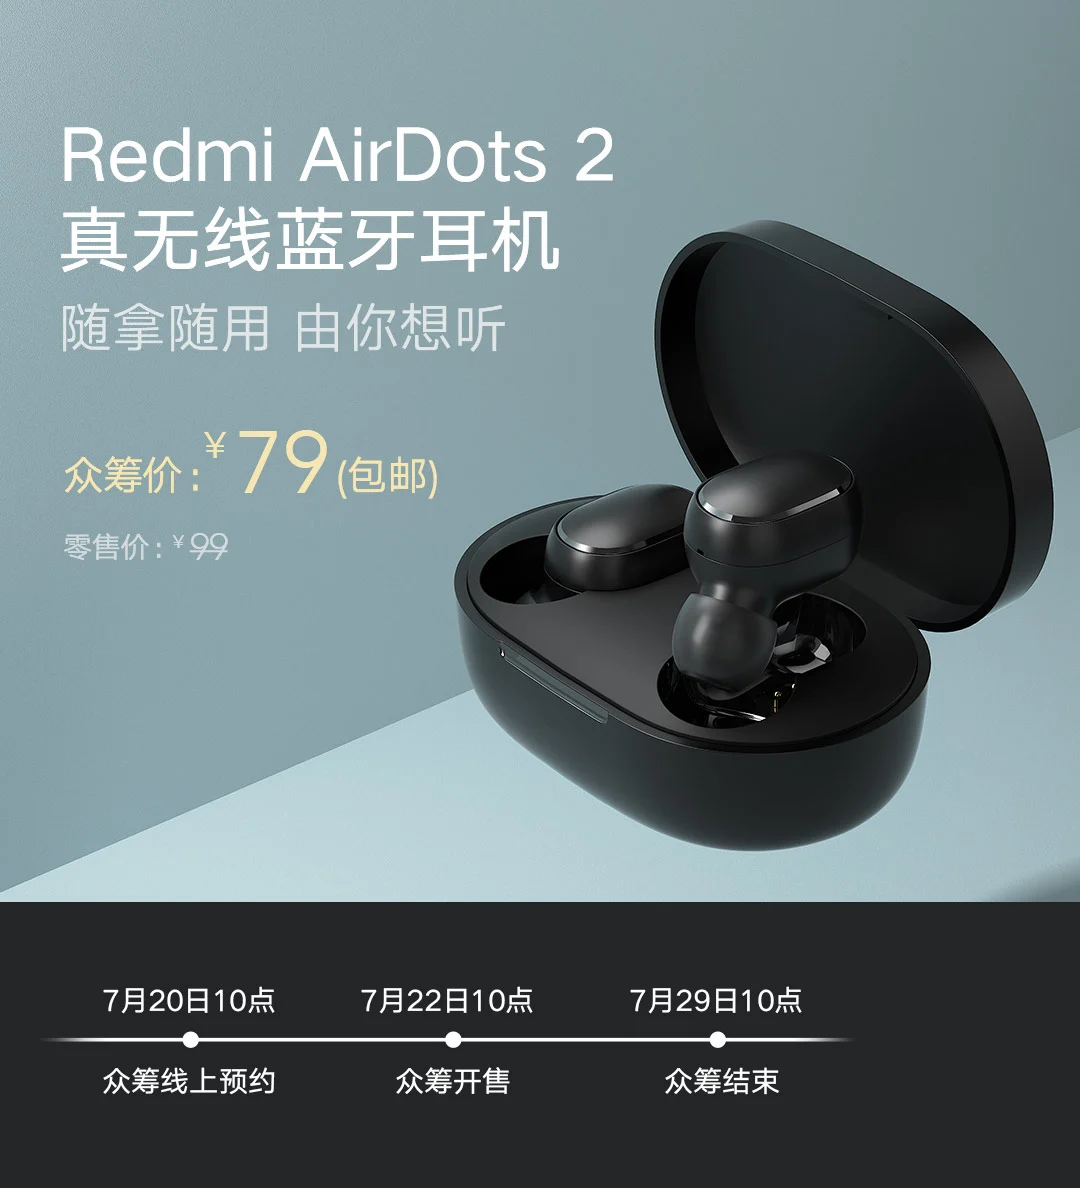 Redmi AirDots 2